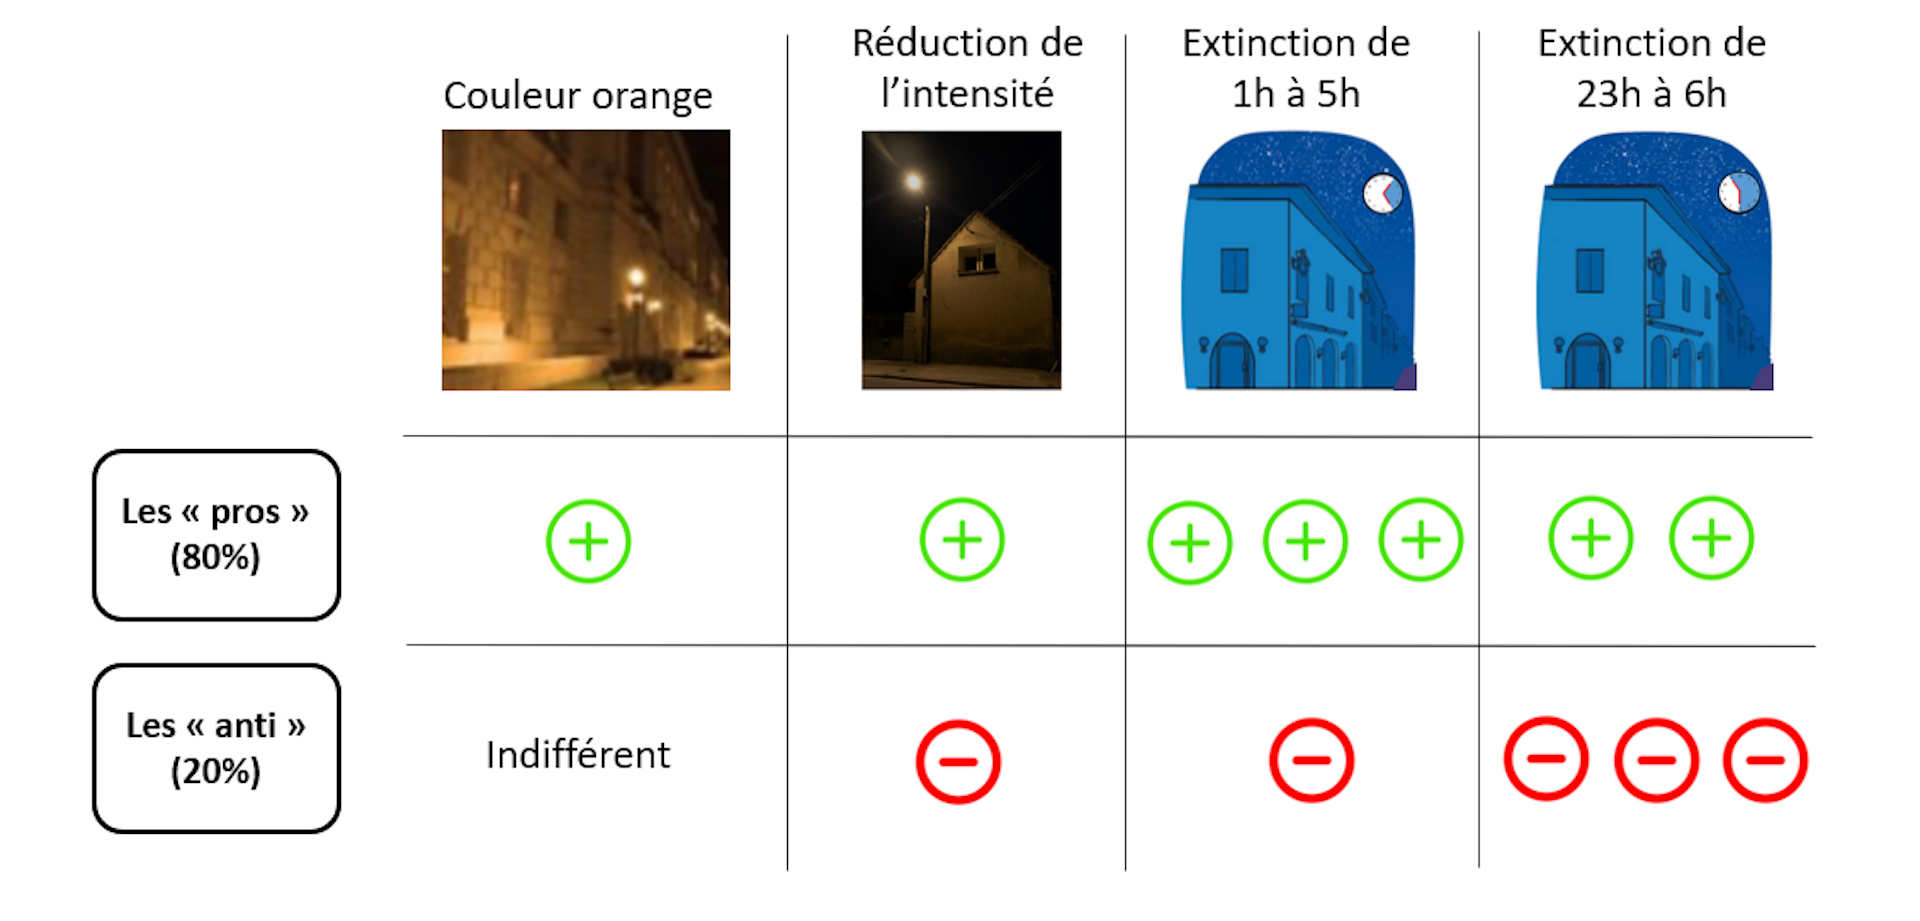 Représentation des avis concernant différentes méthodes pour modifier l'éclairage nocturne. Les personnes sont majoritairement (80%) favorables au changement.